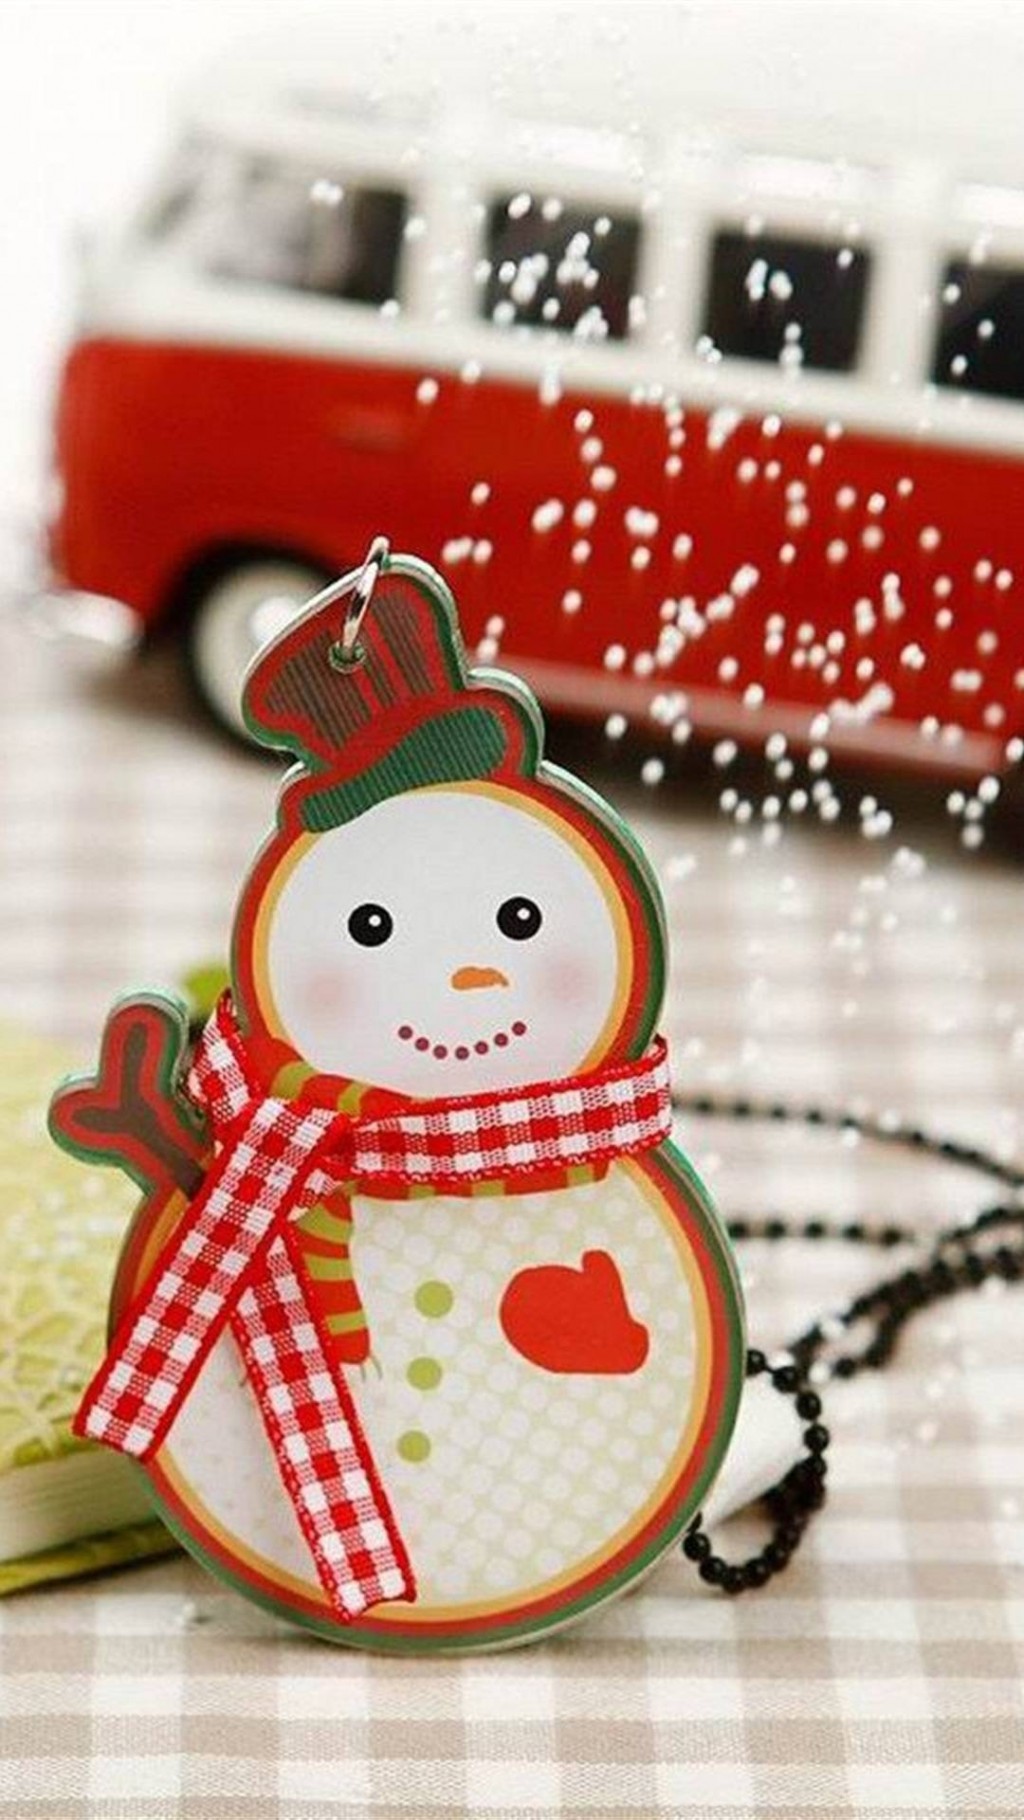 可爱圣诞节雪人壁纸图片